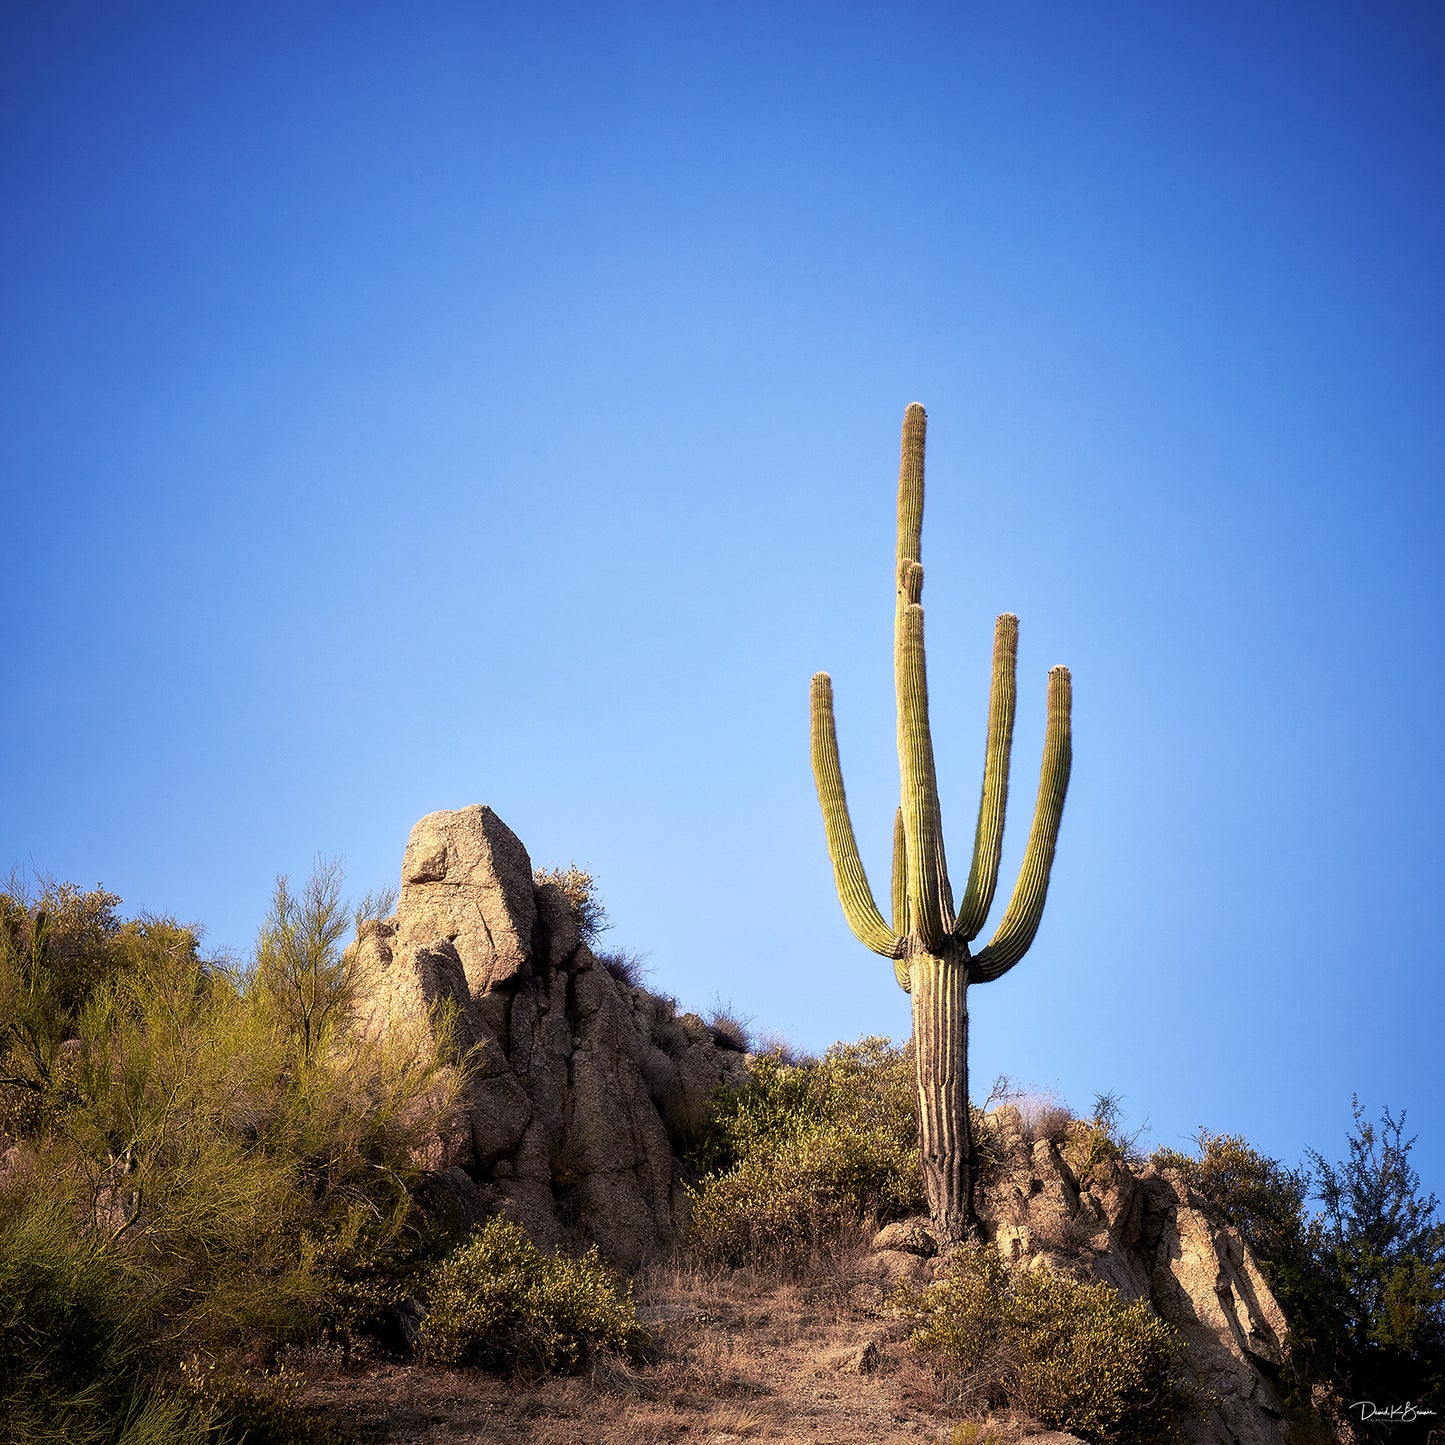 The Lone Cactus